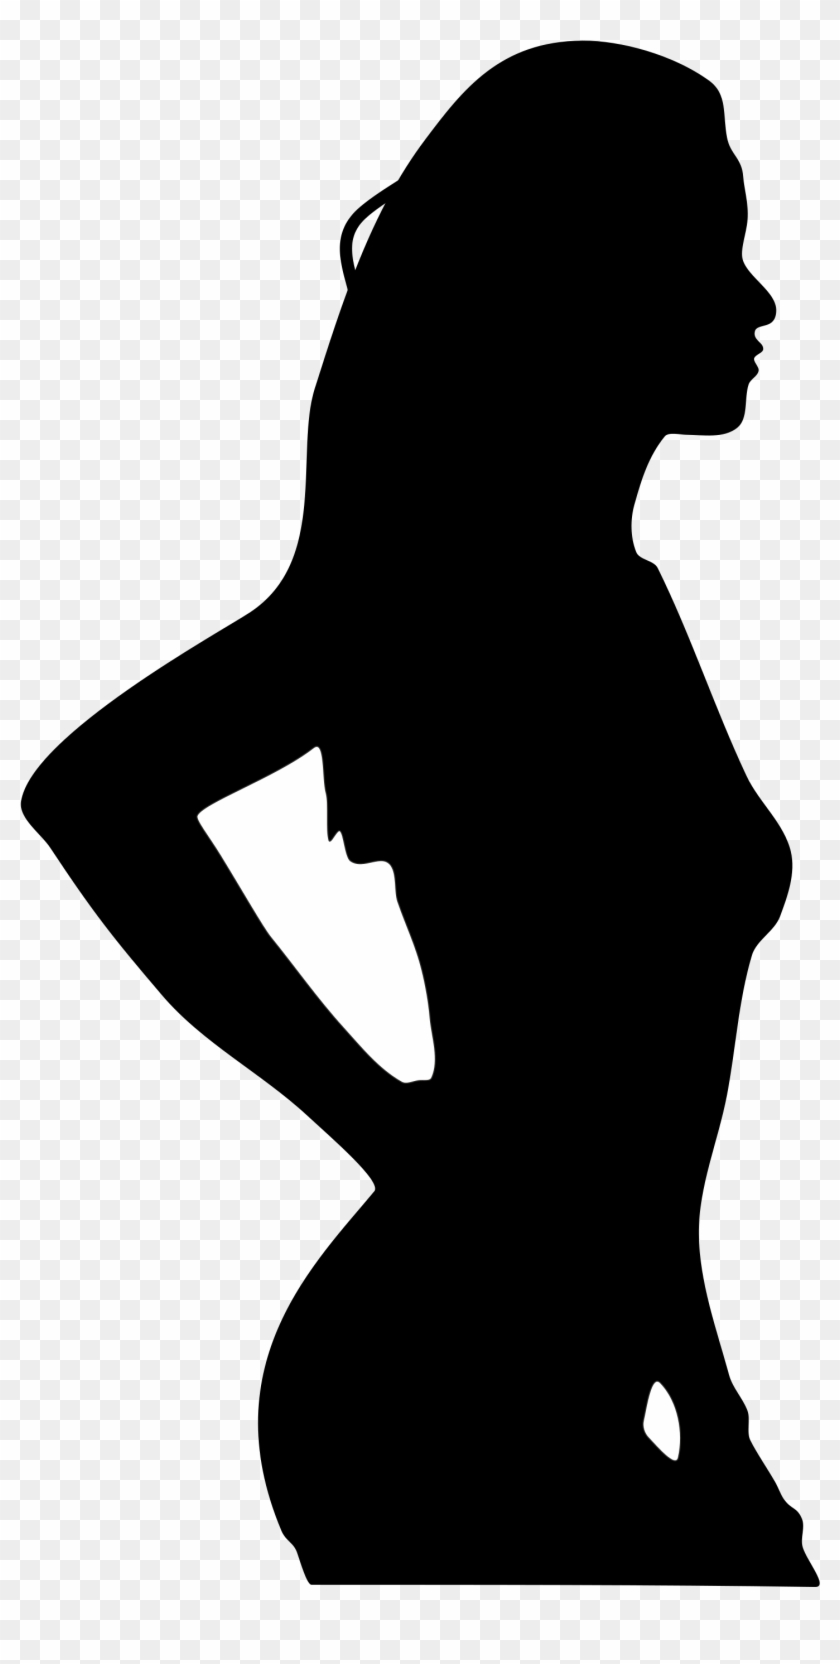 Body - Woman Silhouette #261116